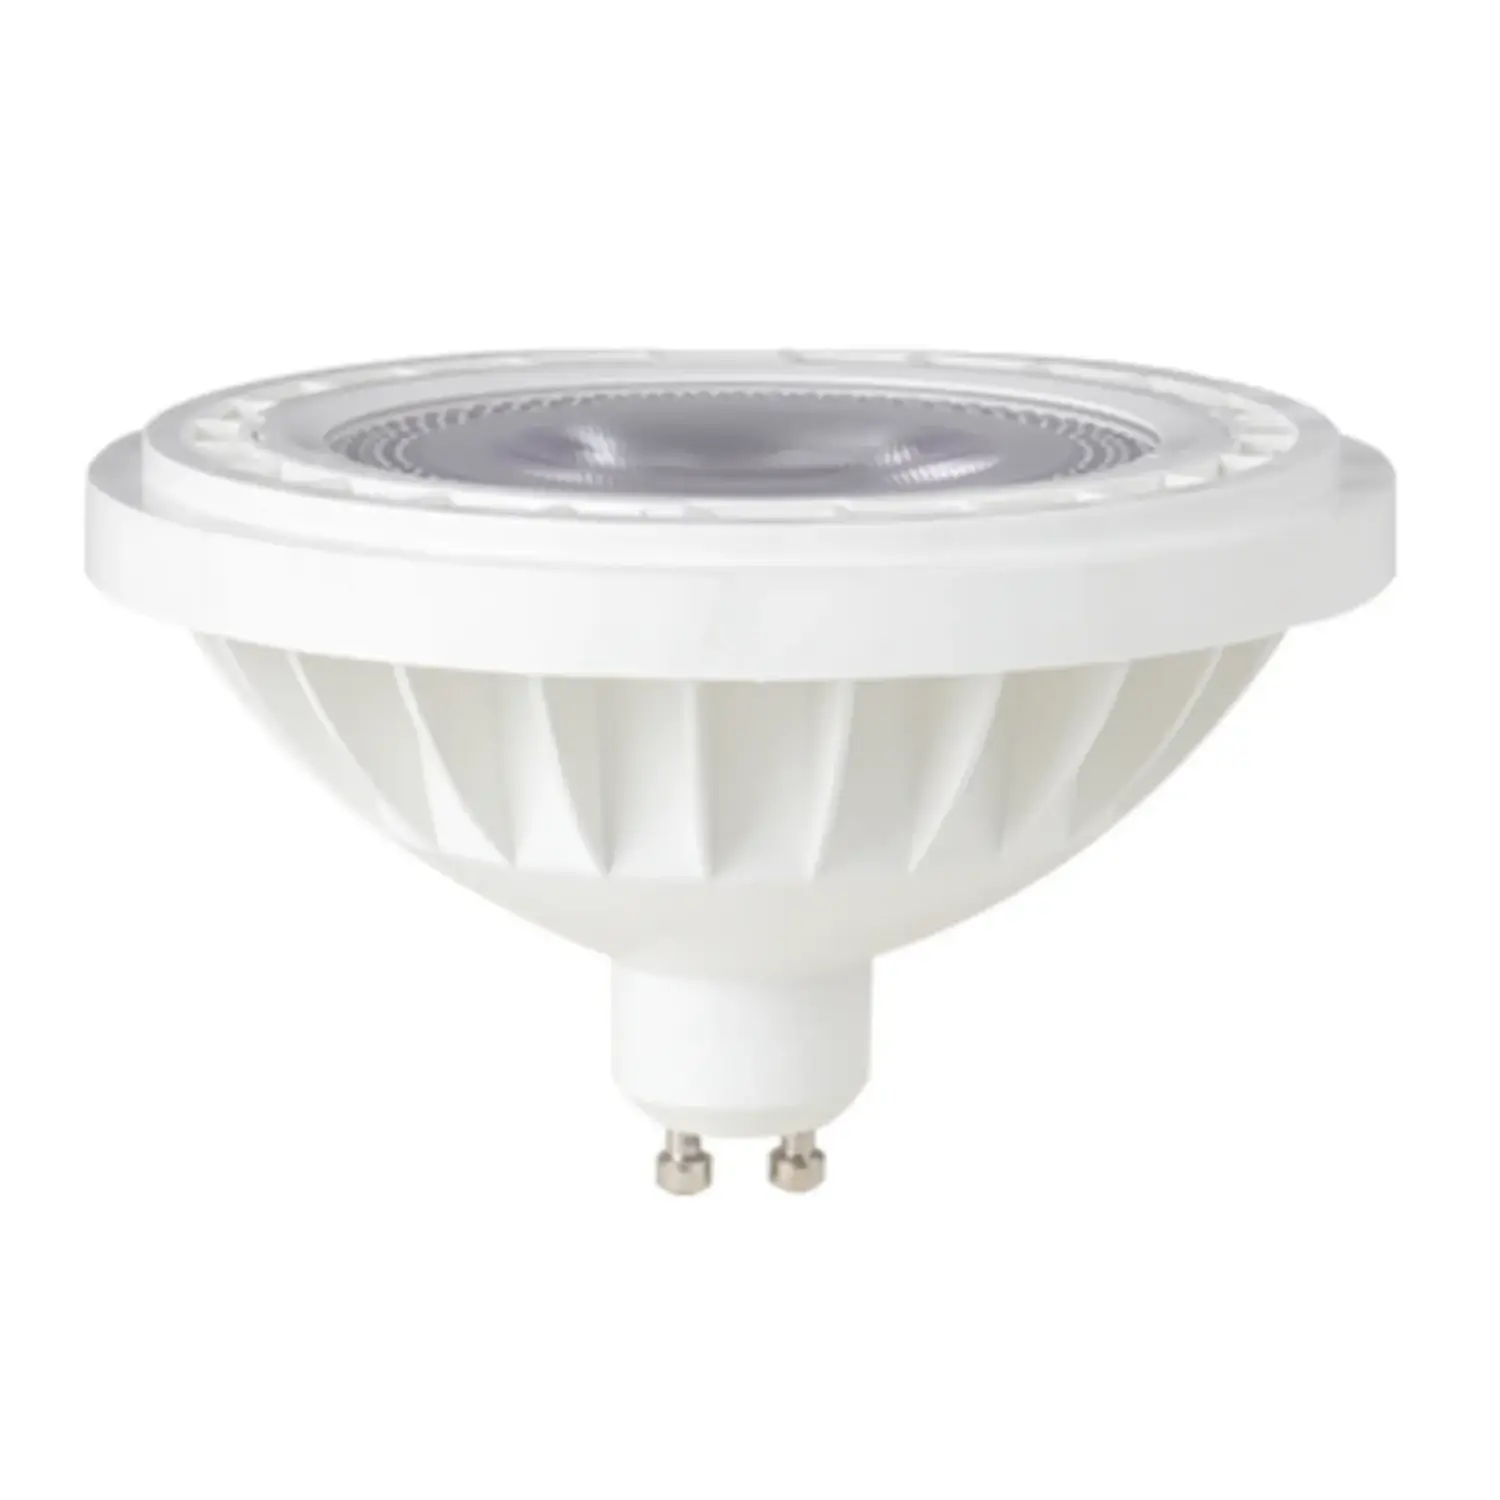 immagine del prodotto lampadina led ar111 230volt gu10 15 watt bianco freddo